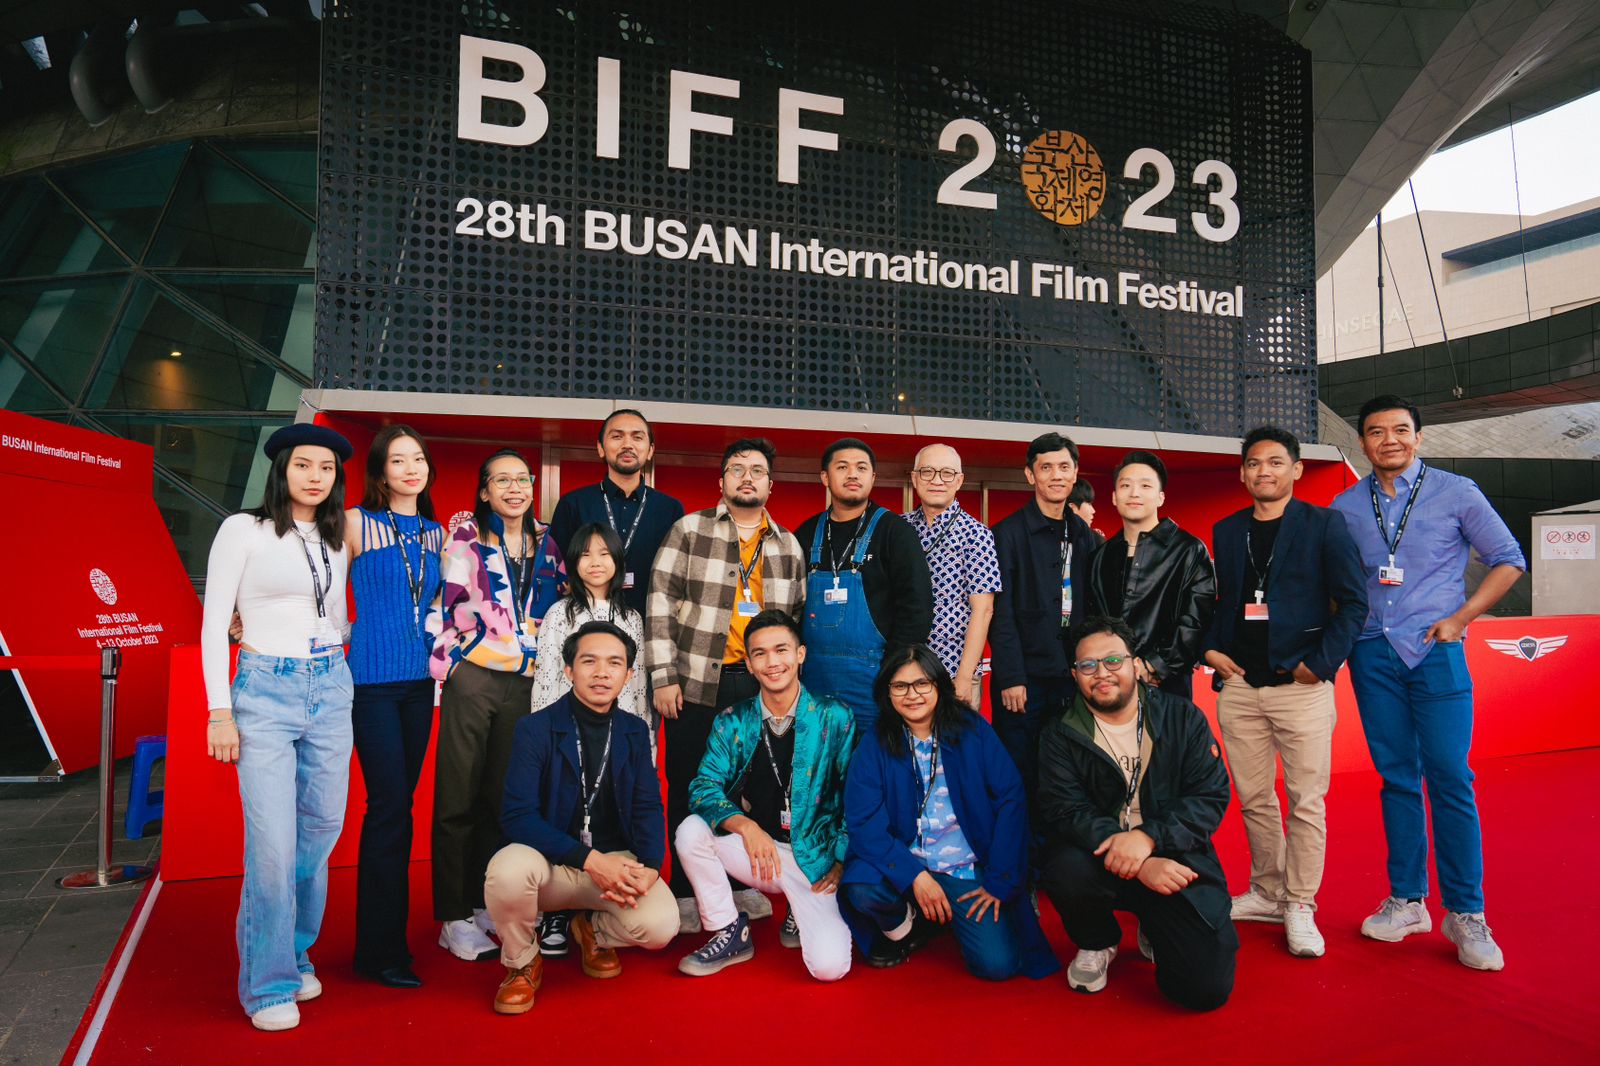 Film Pendek Prakerja Tampil di Busan Festival, Sineas Dunia Terkesan